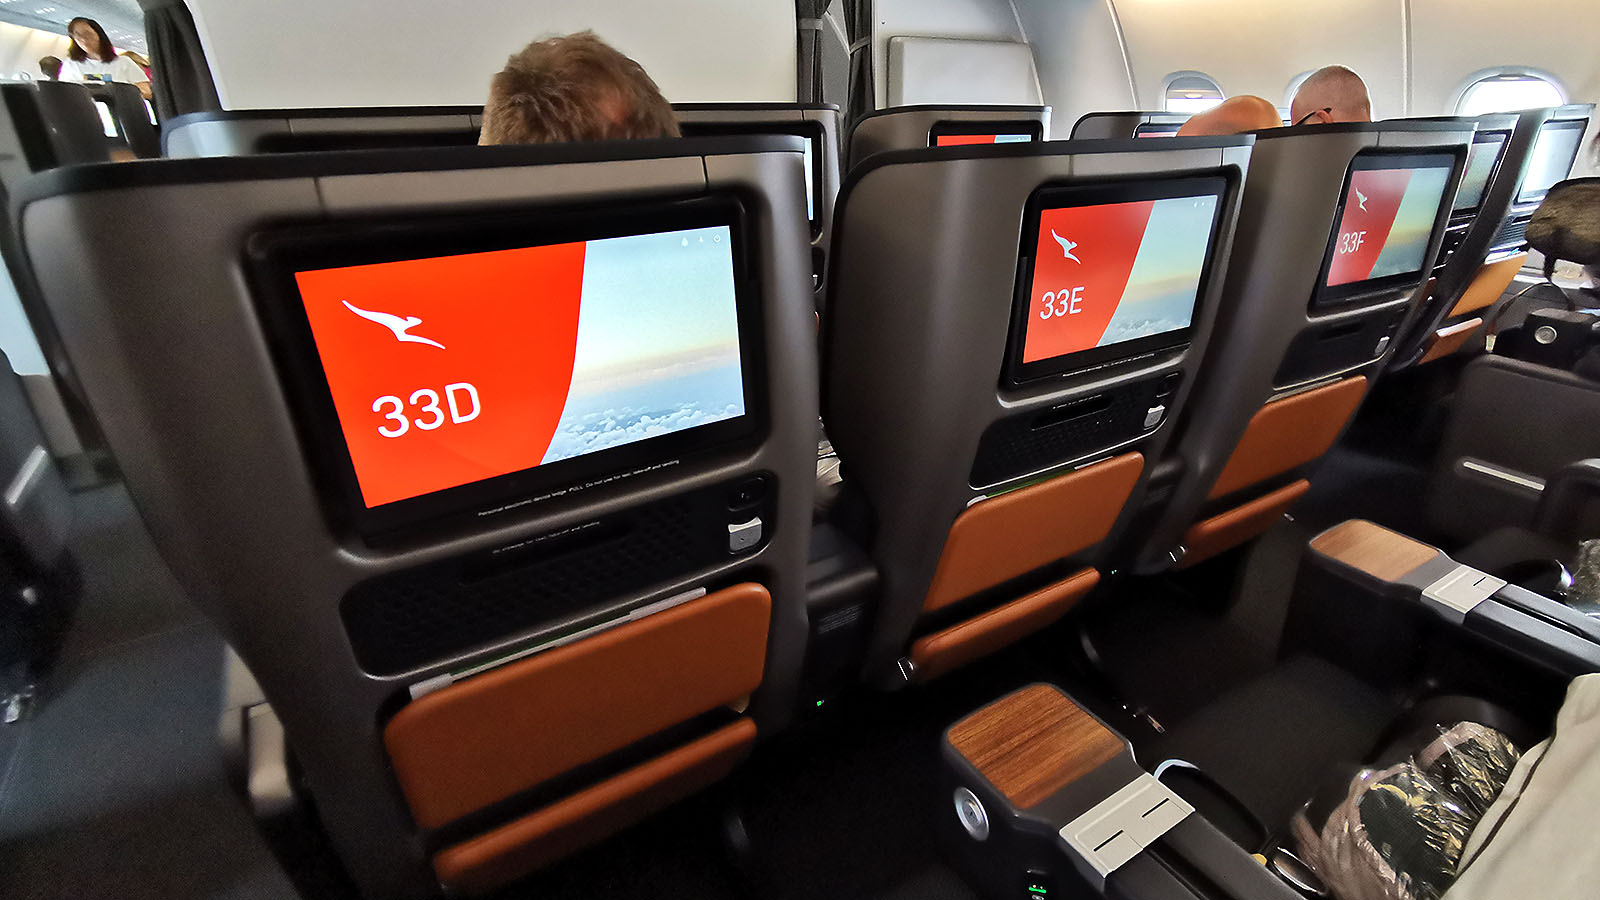 Entertainment in Qantas A380 Premium Economy